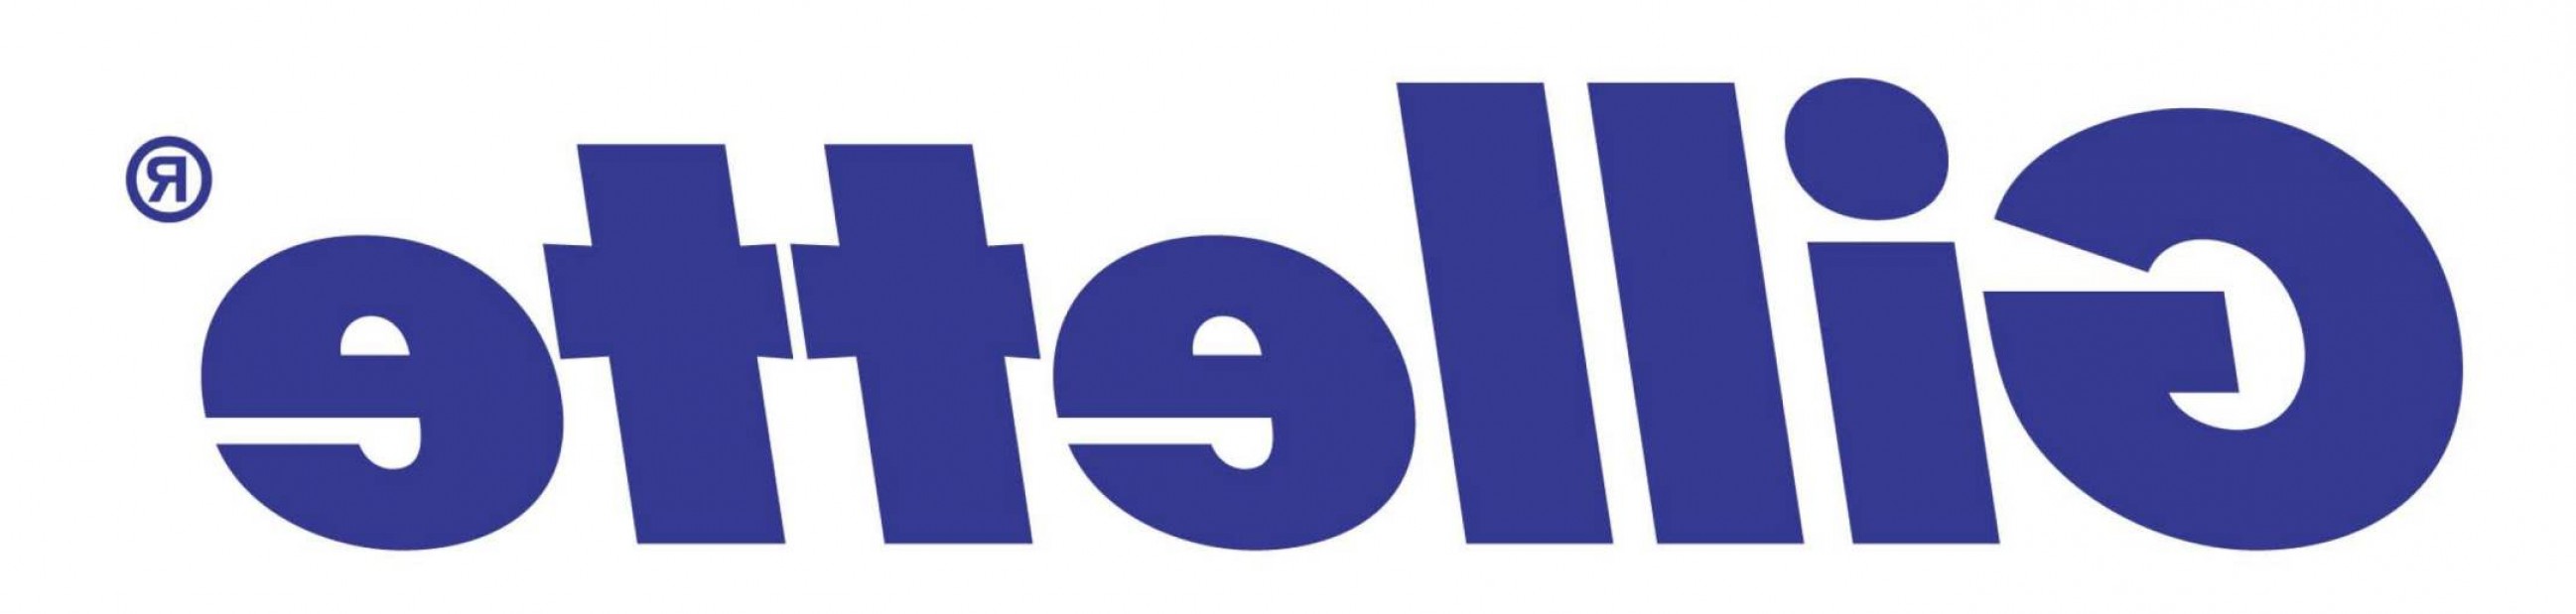 Gillette Logo Design Vector Free Download.